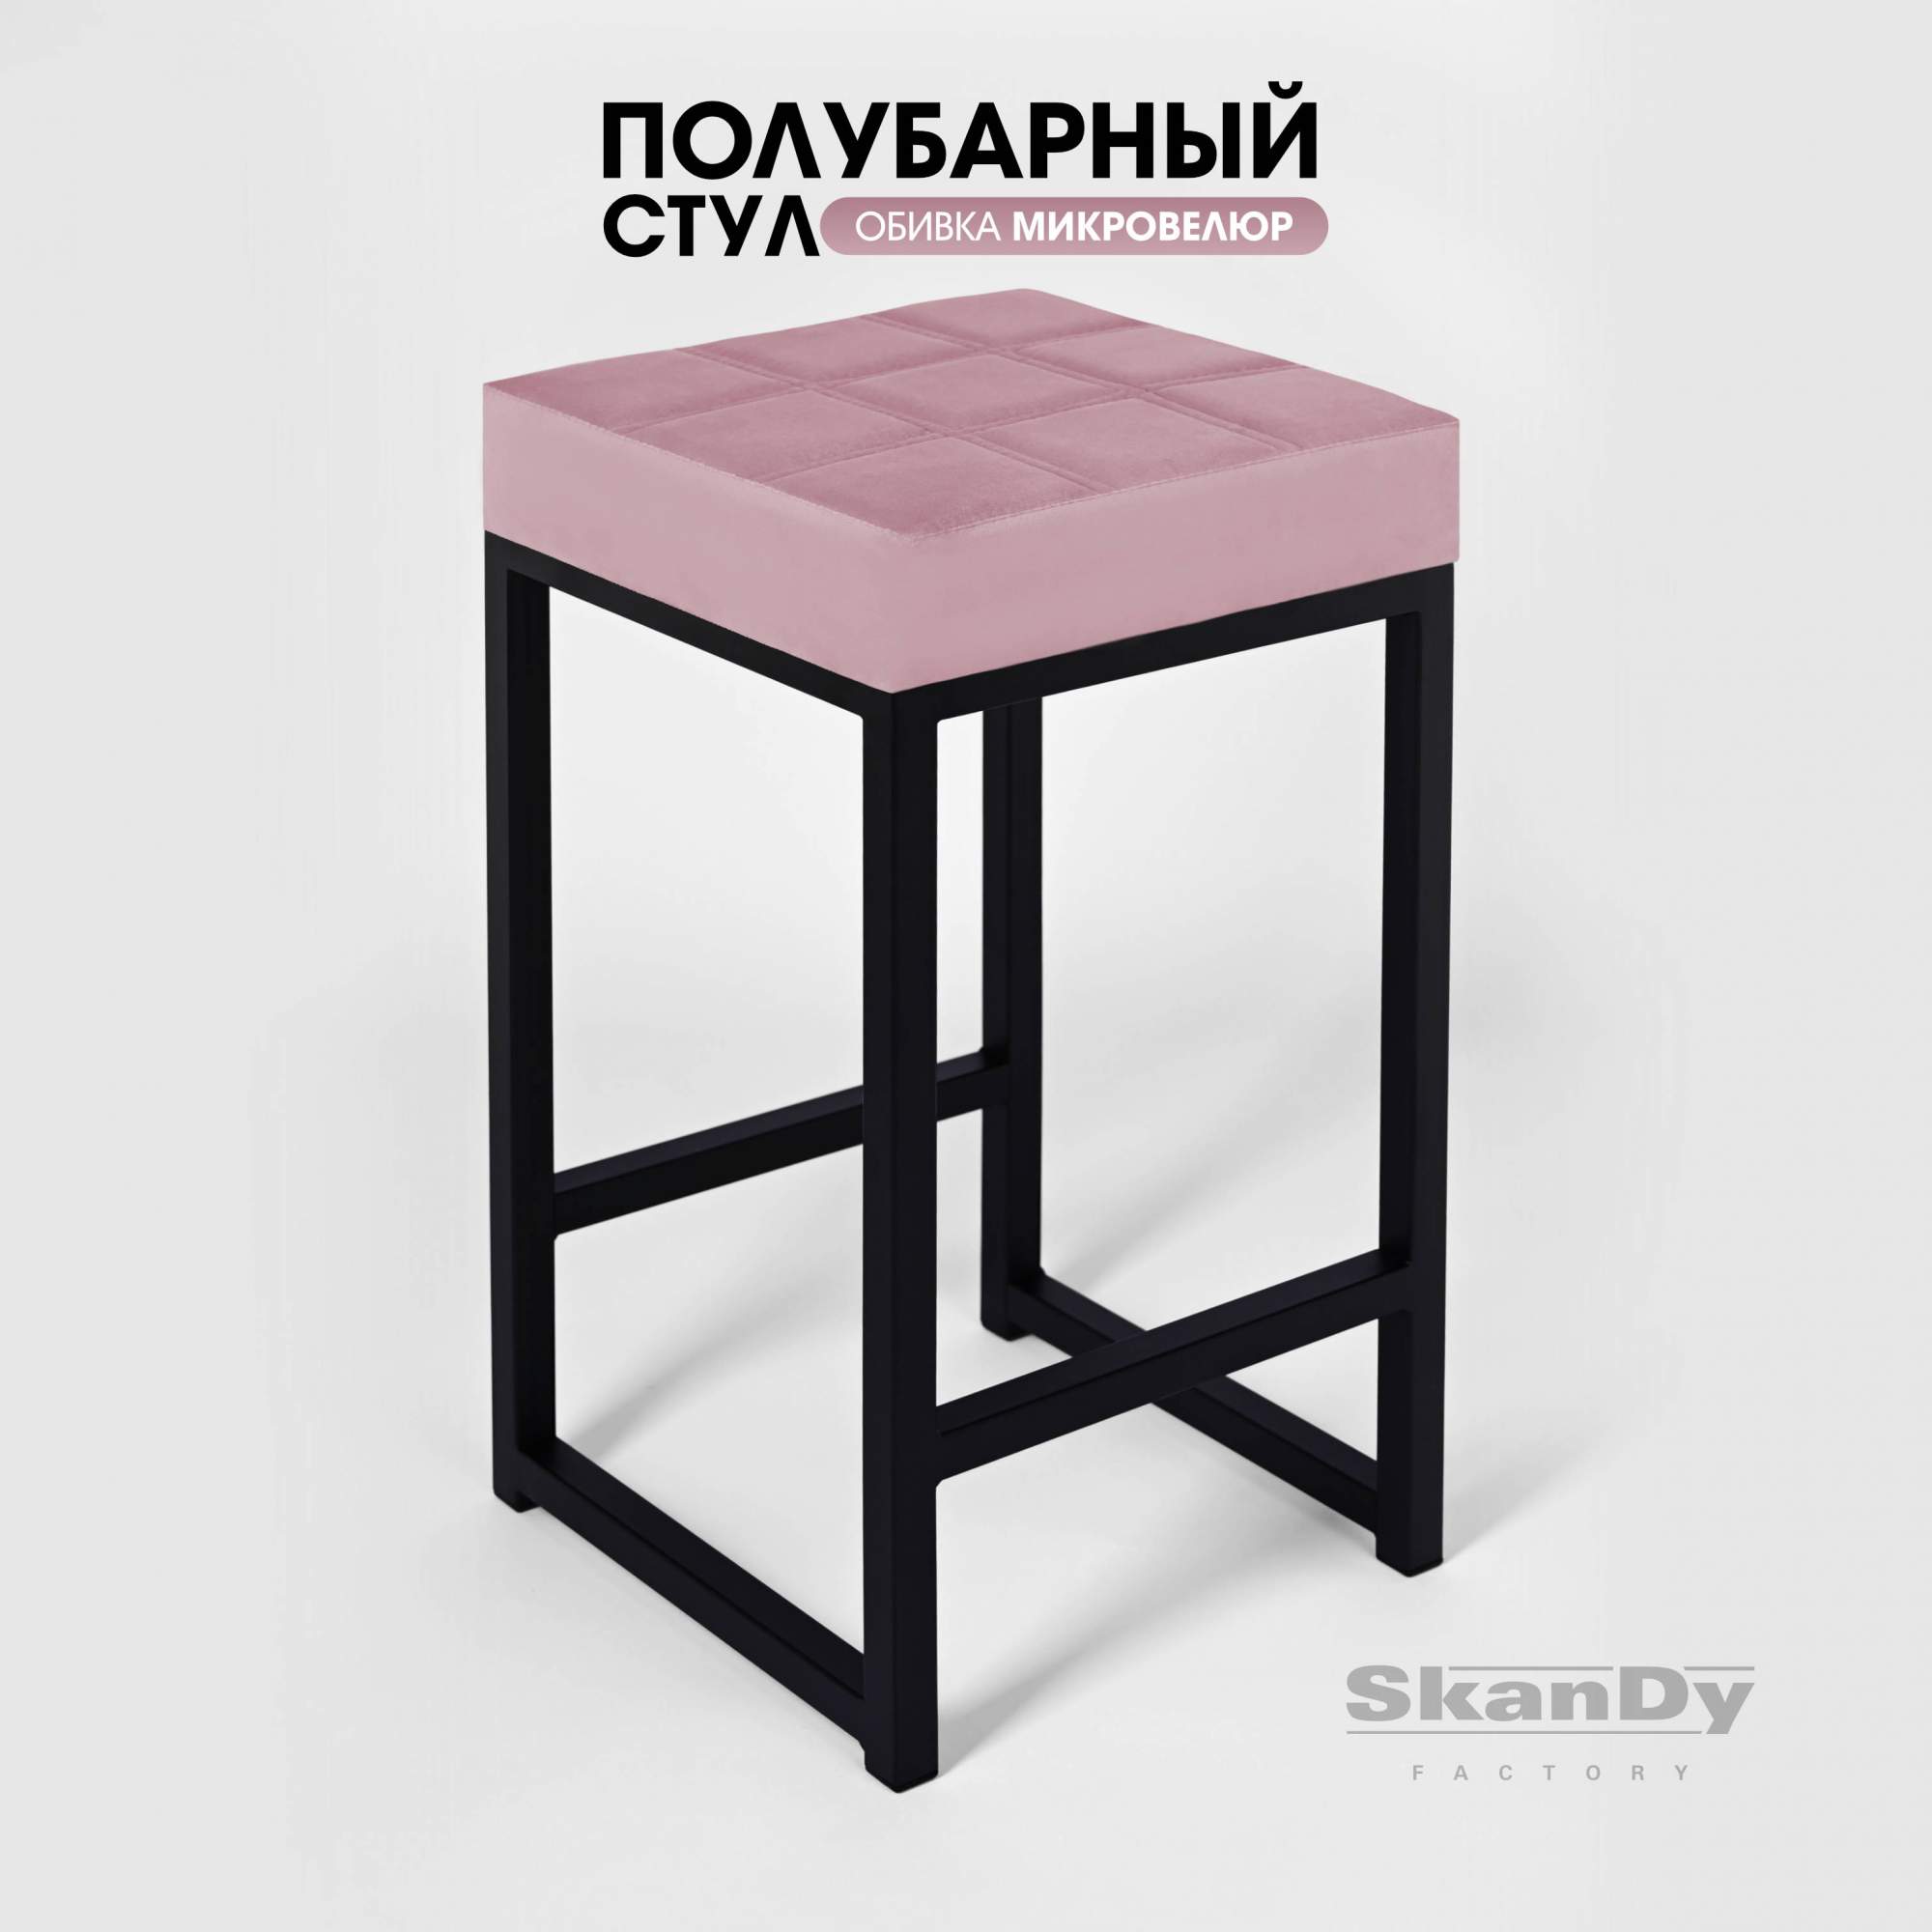 Полубарный стул для кухни SkanDy Factory, 66 см, пудровый